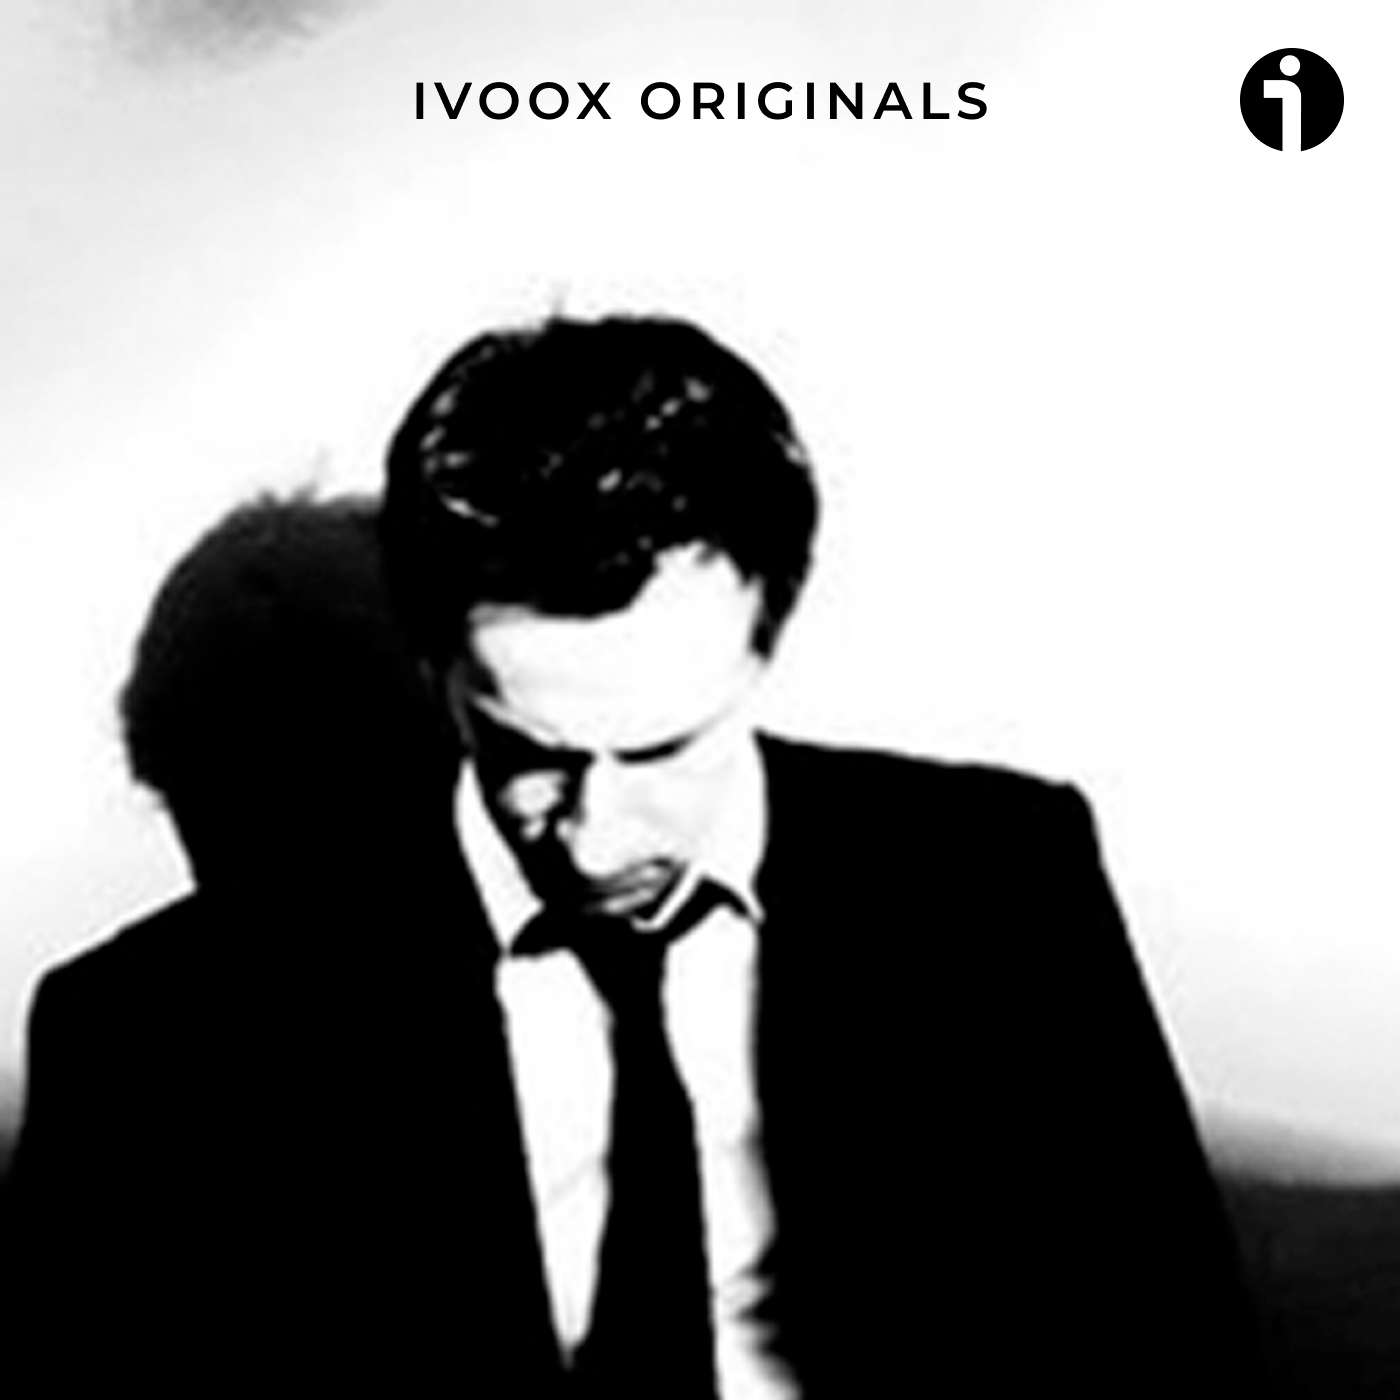 www.ivoox.com